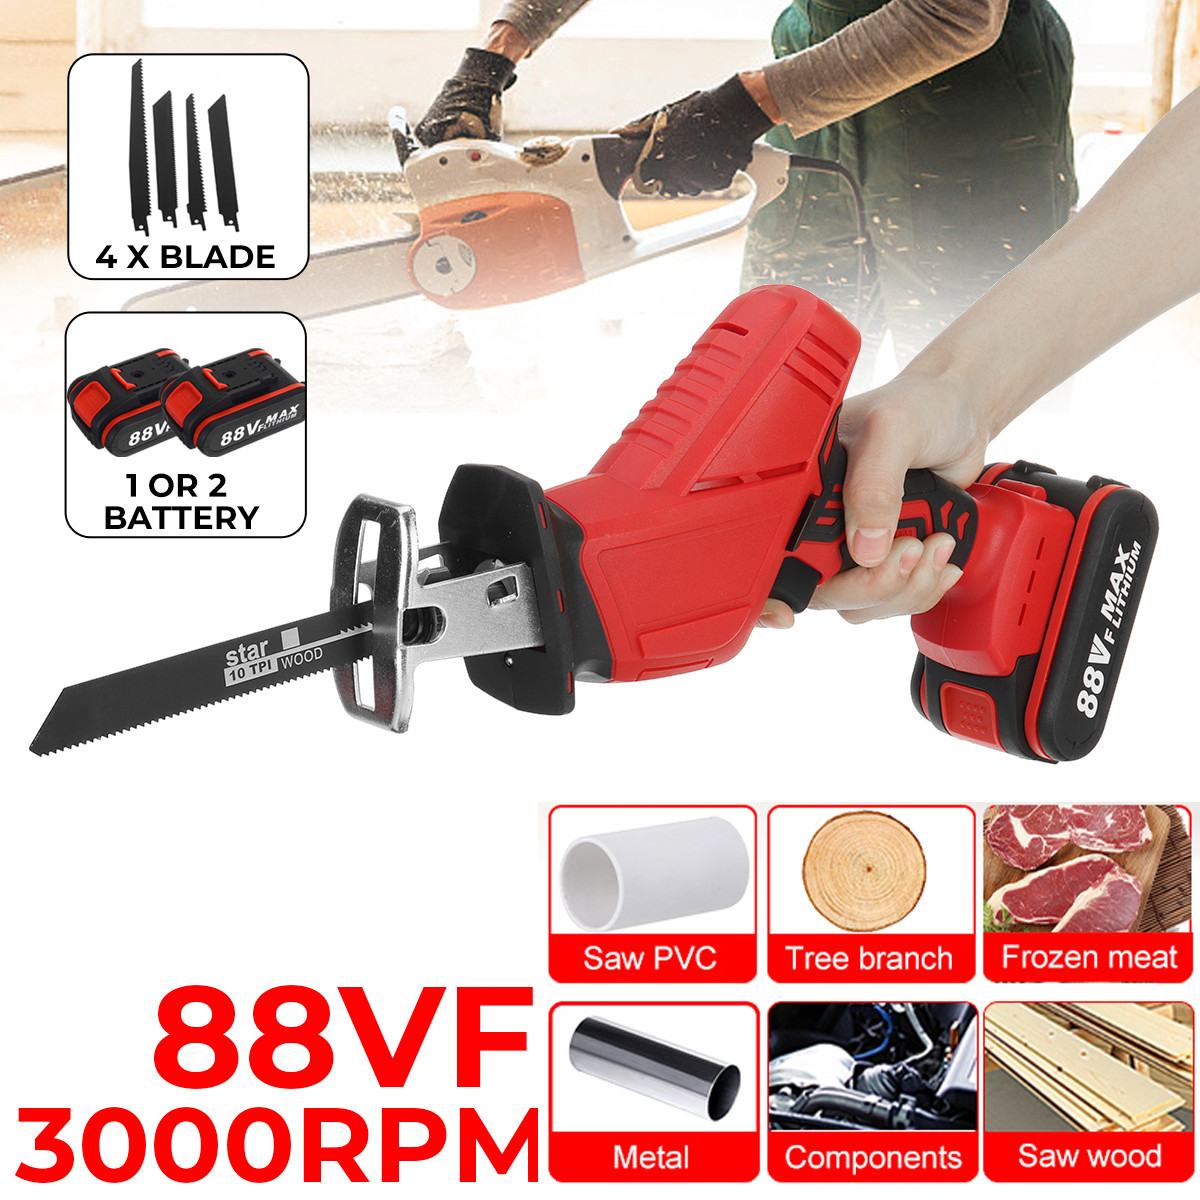 88V Accu Reciprozaag Outdoor Elektrische Saber Saw Kit Voor Hout Metaal Snijden Houtbewerking Gereedschap Batterij Oplaadbare